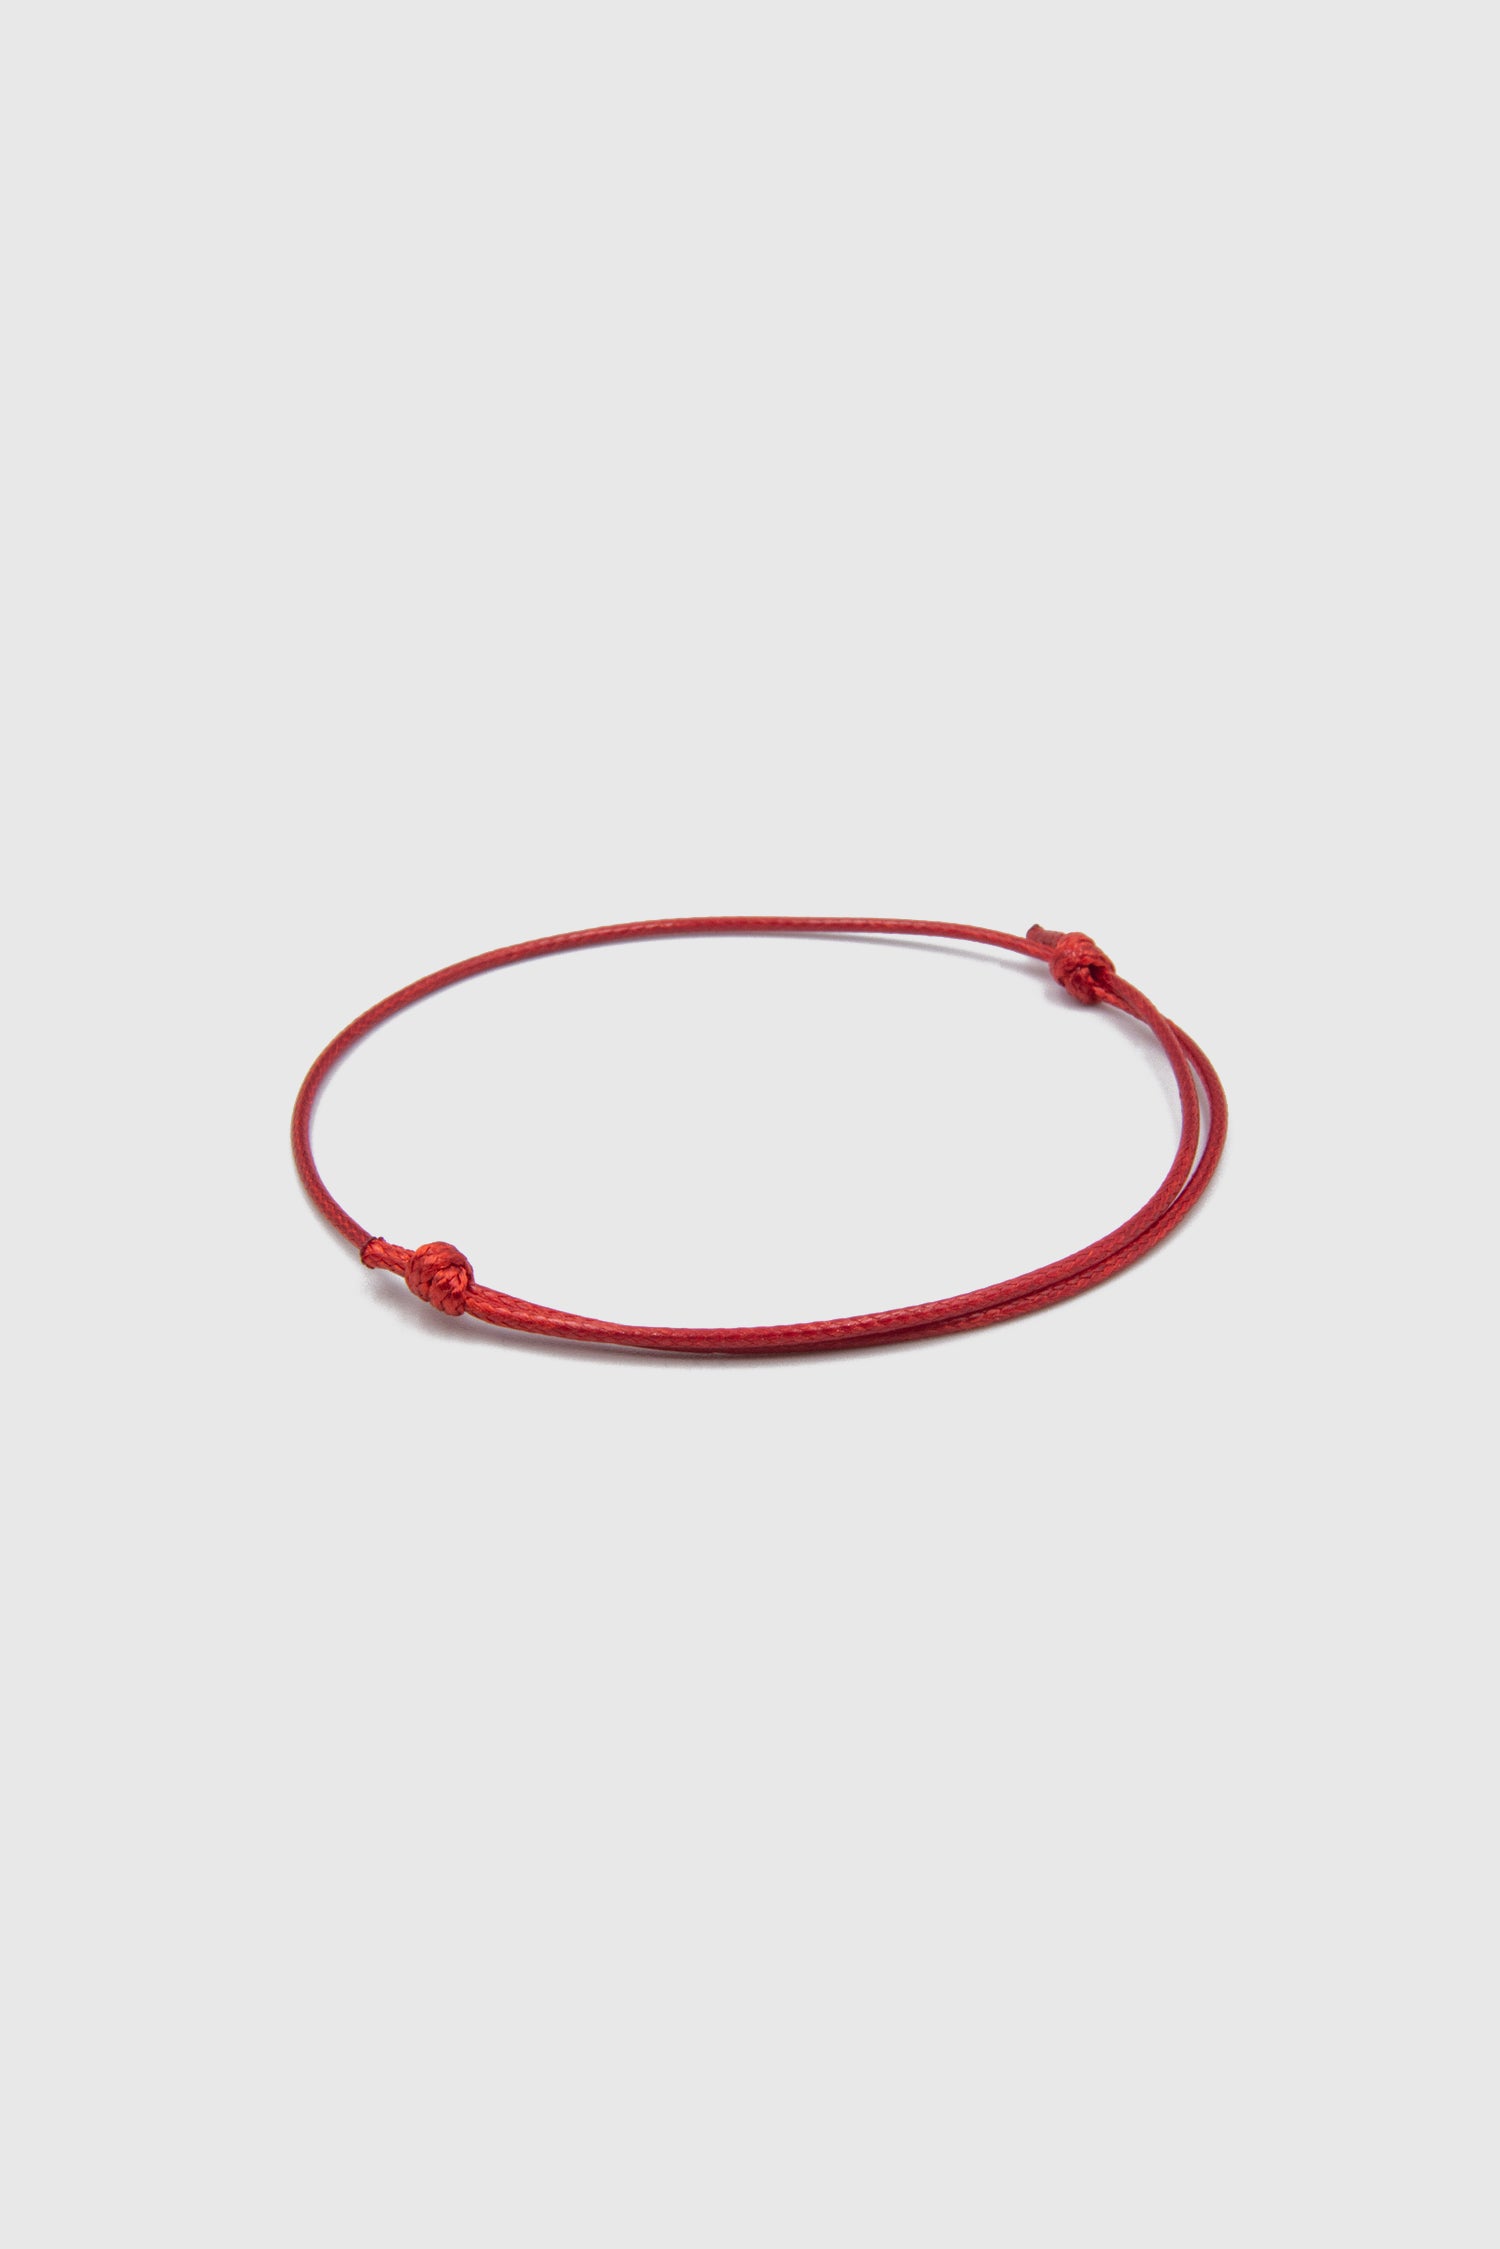 Lucky Red String Handmade Ceramic bracelets -2/pc set – zenheavens